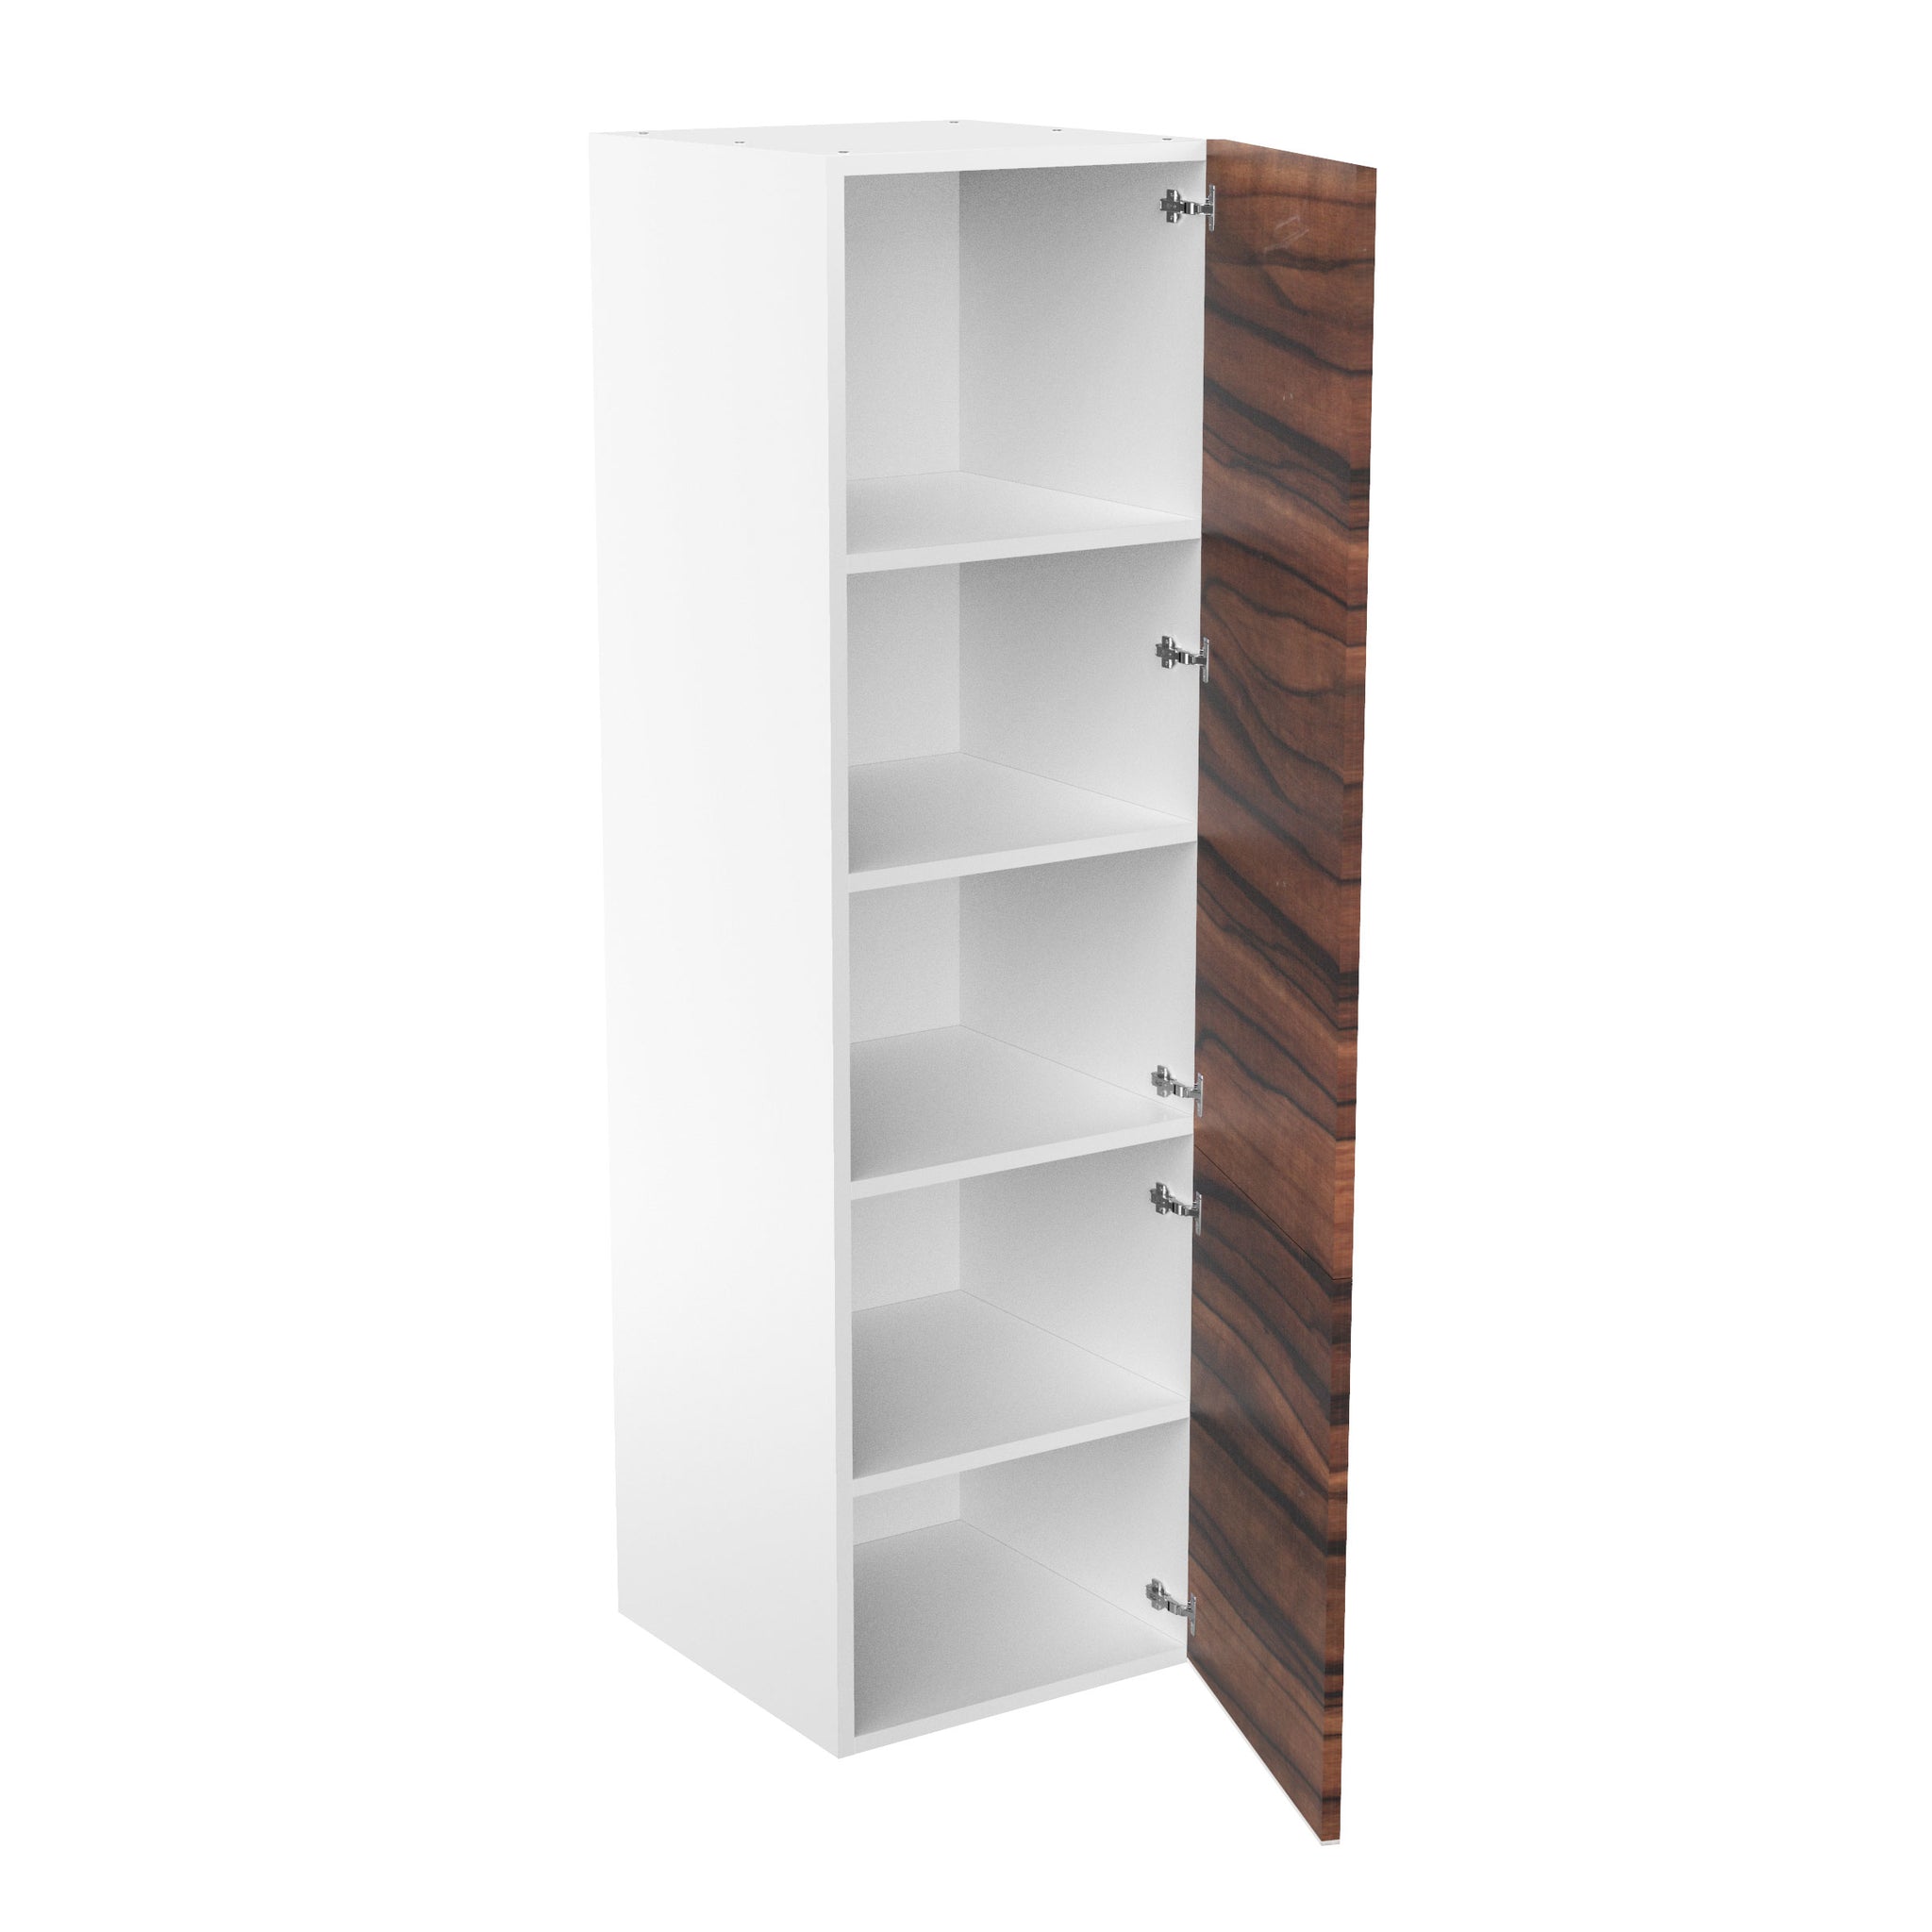 RTA - Ebony UV - Single Door Tall Cabinets | 24"W x 84"H x 23.8"D